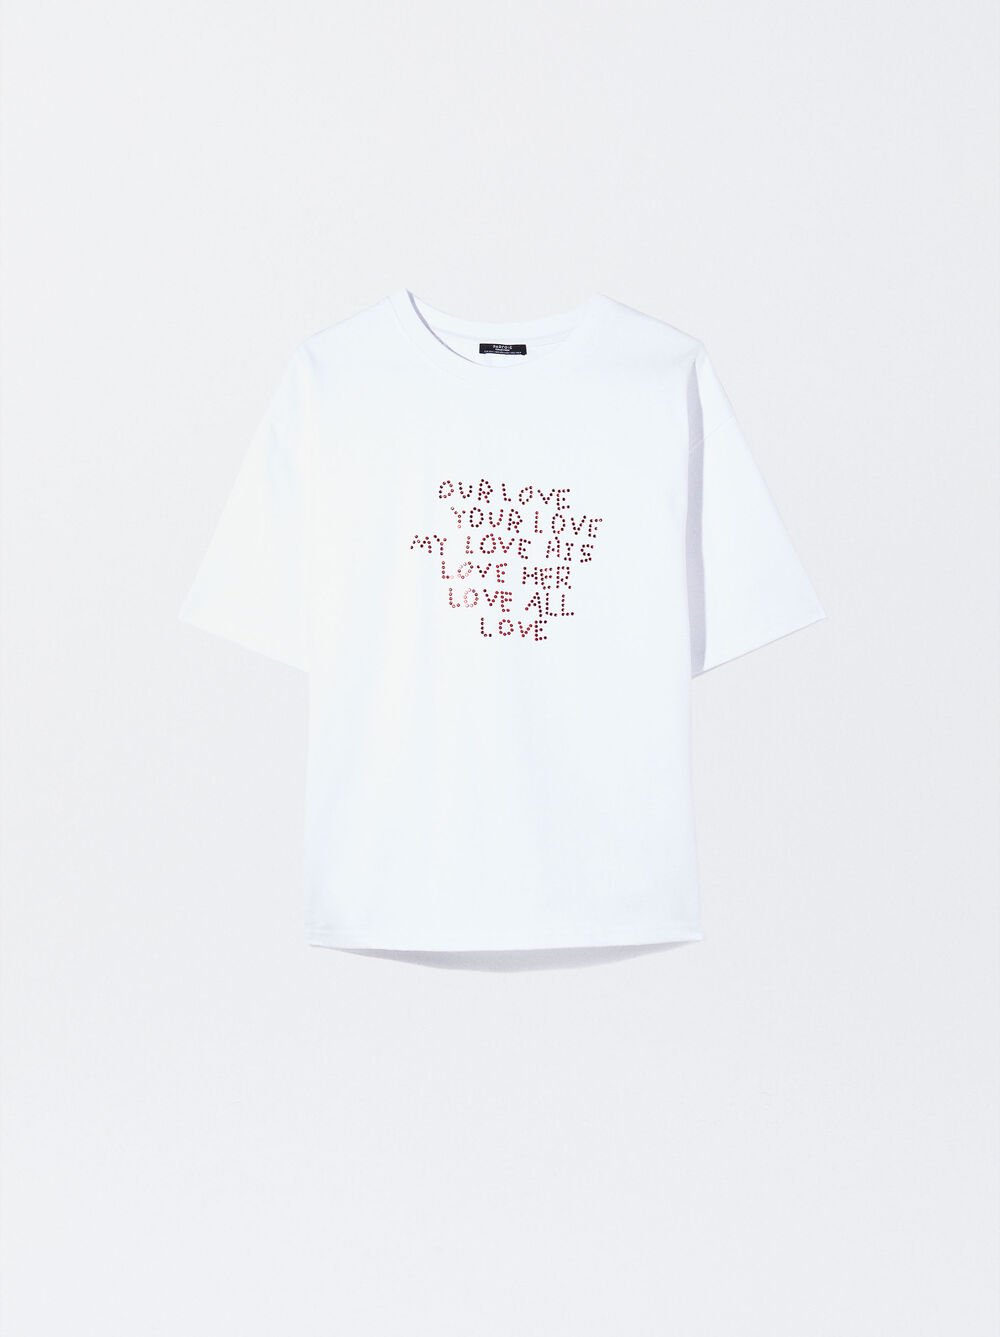 Exclusivo Online - Camisa De Algodón Love